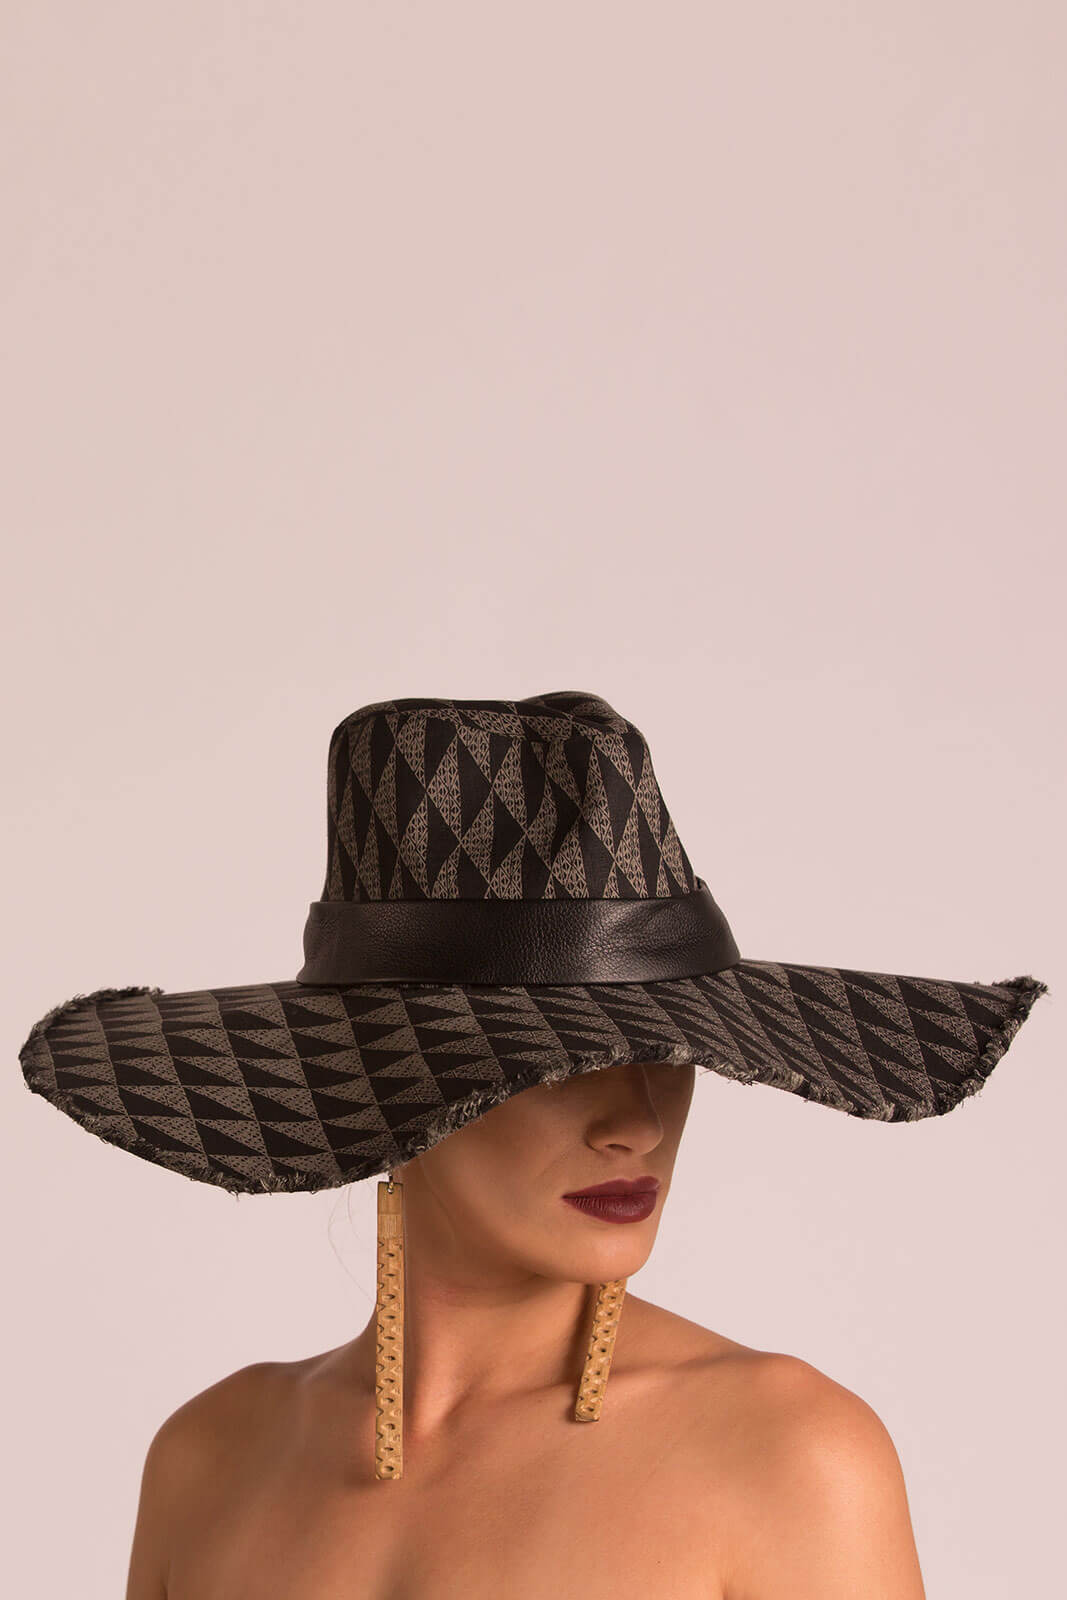 Female model wearing a black hat